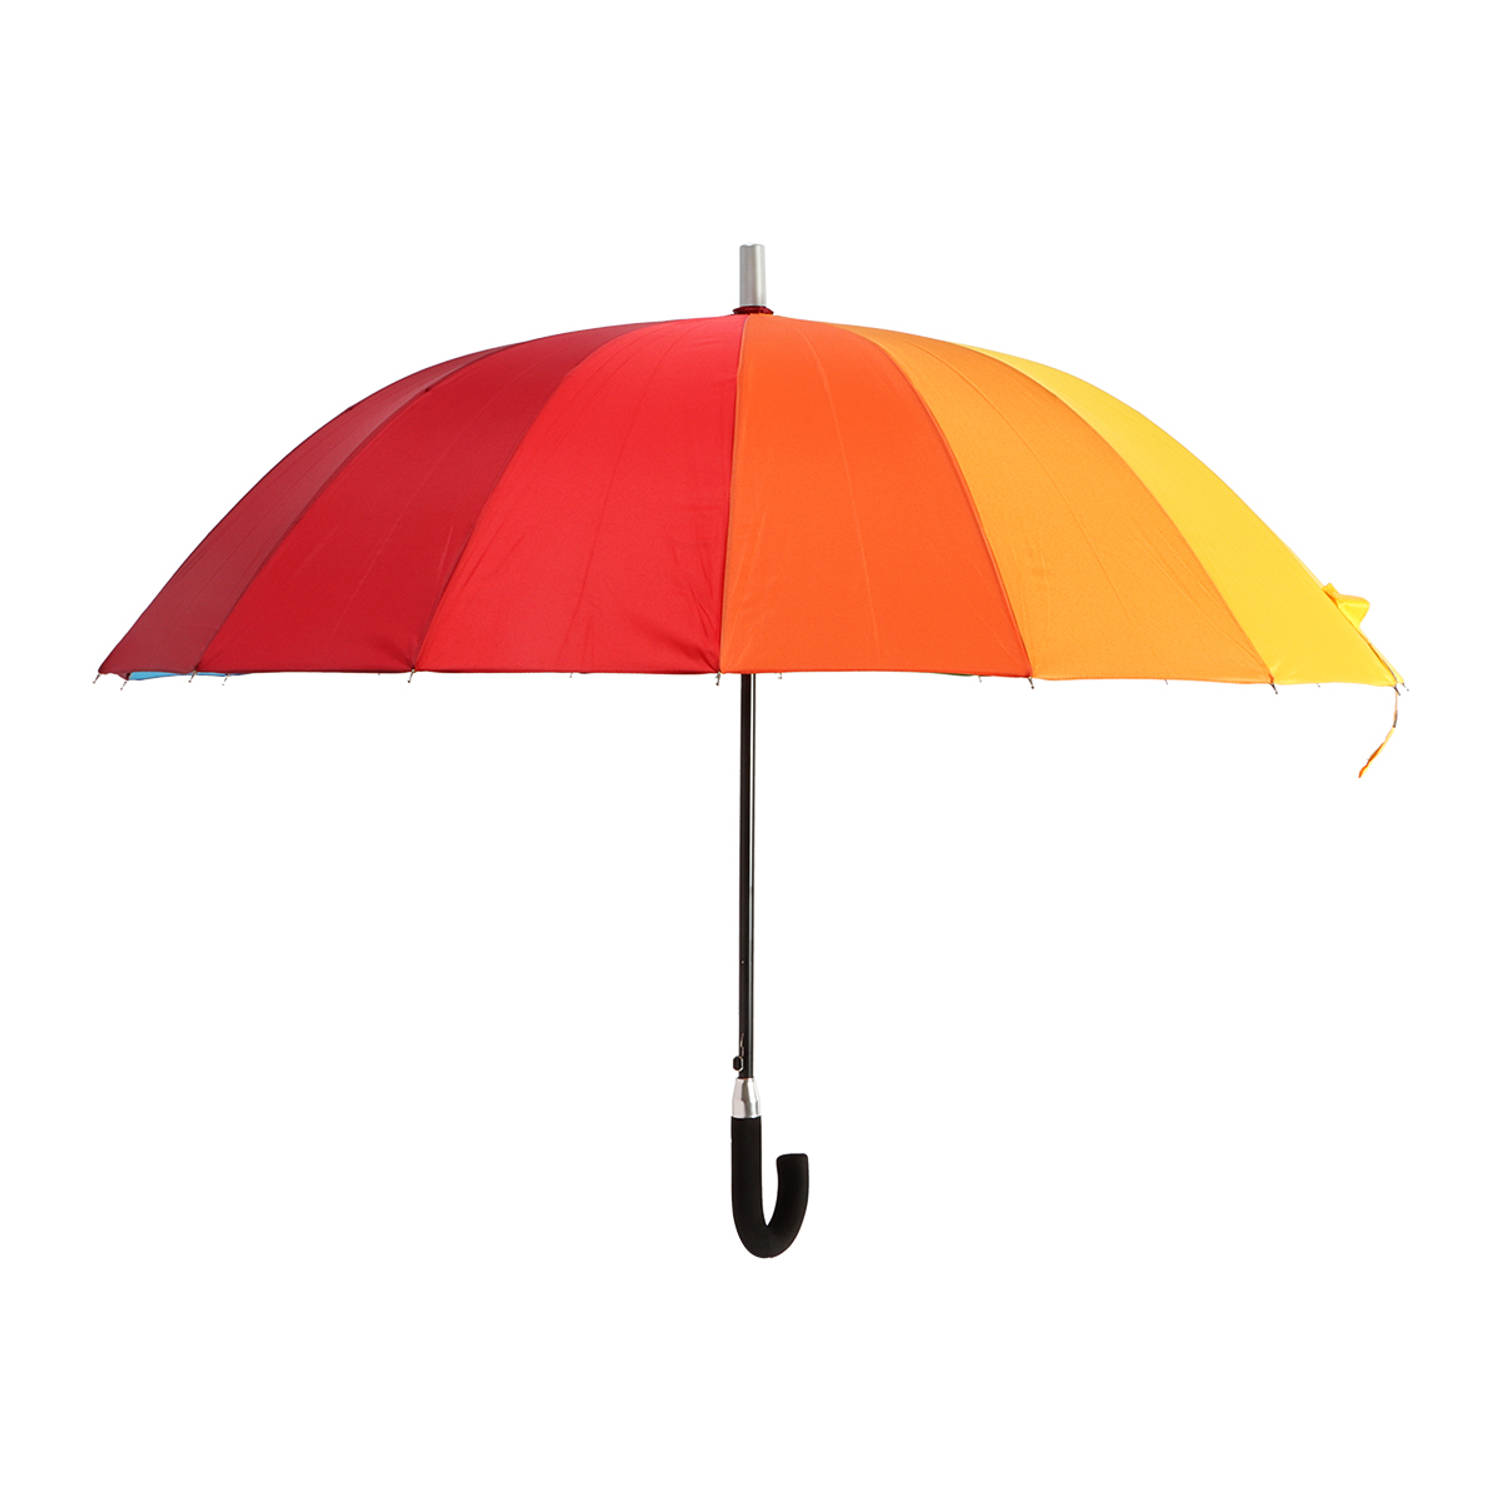 Biggdesign Moods Up Regenboog Paraplu - Windbestendig - Lichte Design - Voor Heren en Dames - Ø110 cm